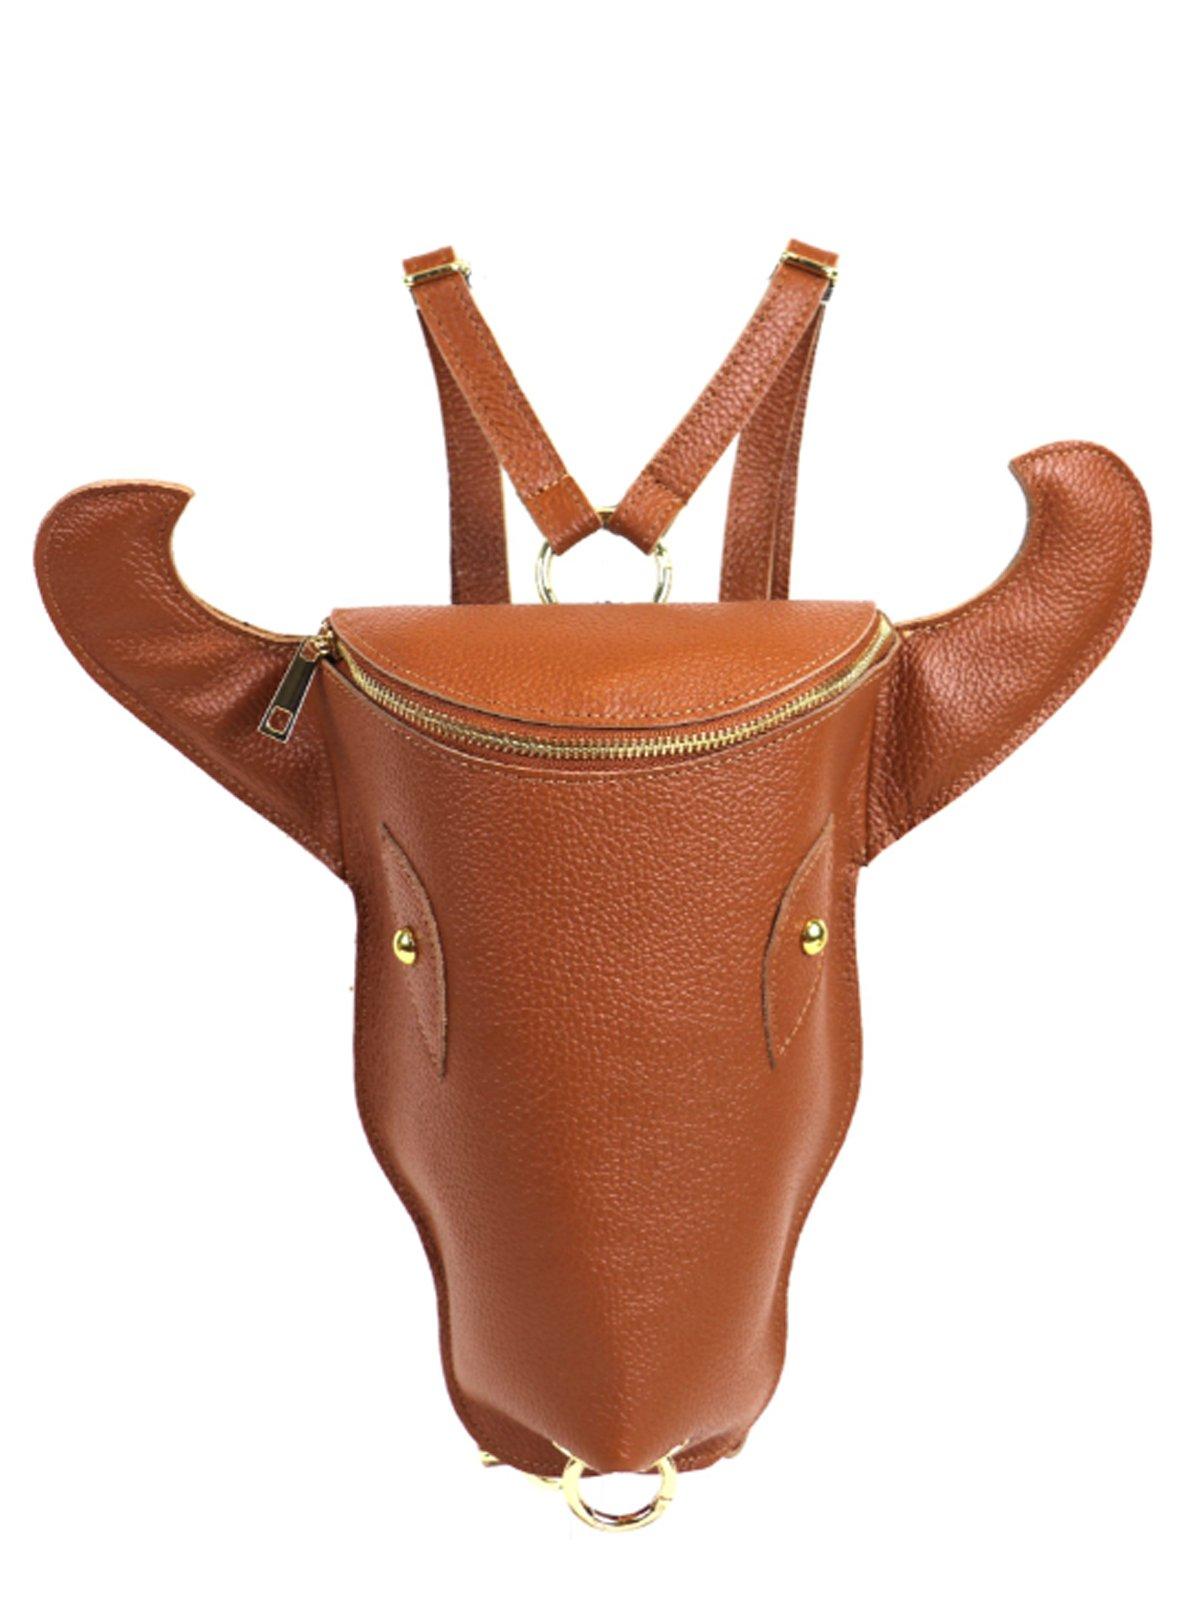 Рюкзак из кожи коровьей головы цвета Camel Sostter, коричневый женские рюкзаки из 100% натуральной кожи серебристого цвета металлический женский школьный рюкзак из коровьей кожи с верхним слоем сумки дл